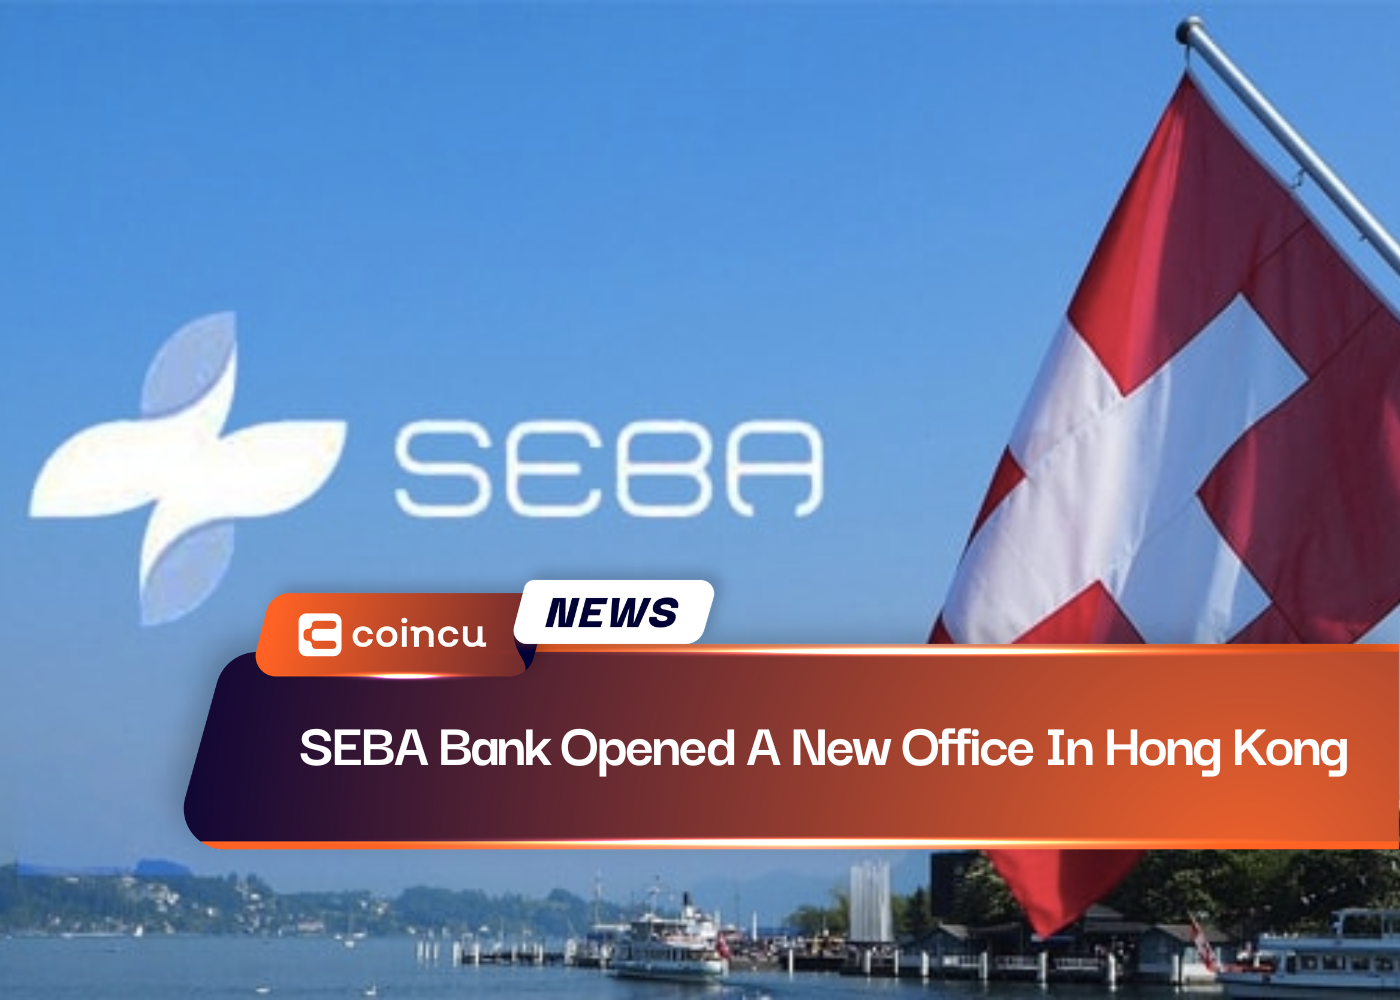 Discover more than 135 seba logo